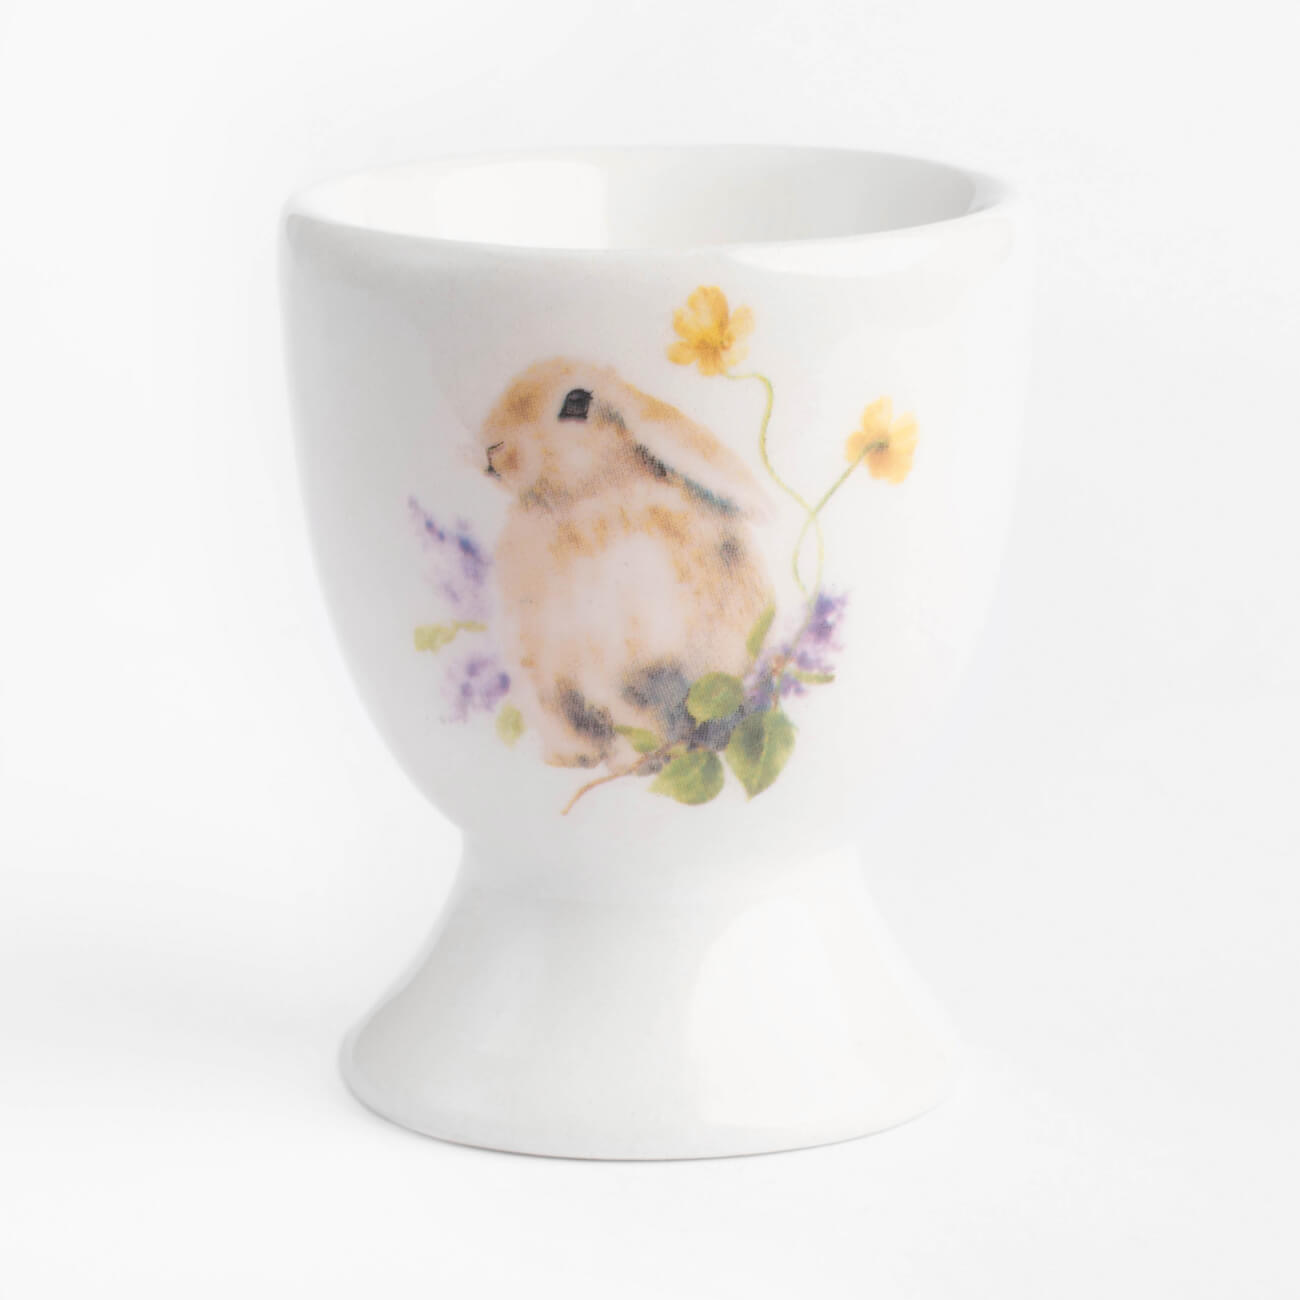 Подставка для яйца, 6 см, керамика, белая, Кролик в цветах, Easter подставка под телефон денежный кролик гжель с золотом